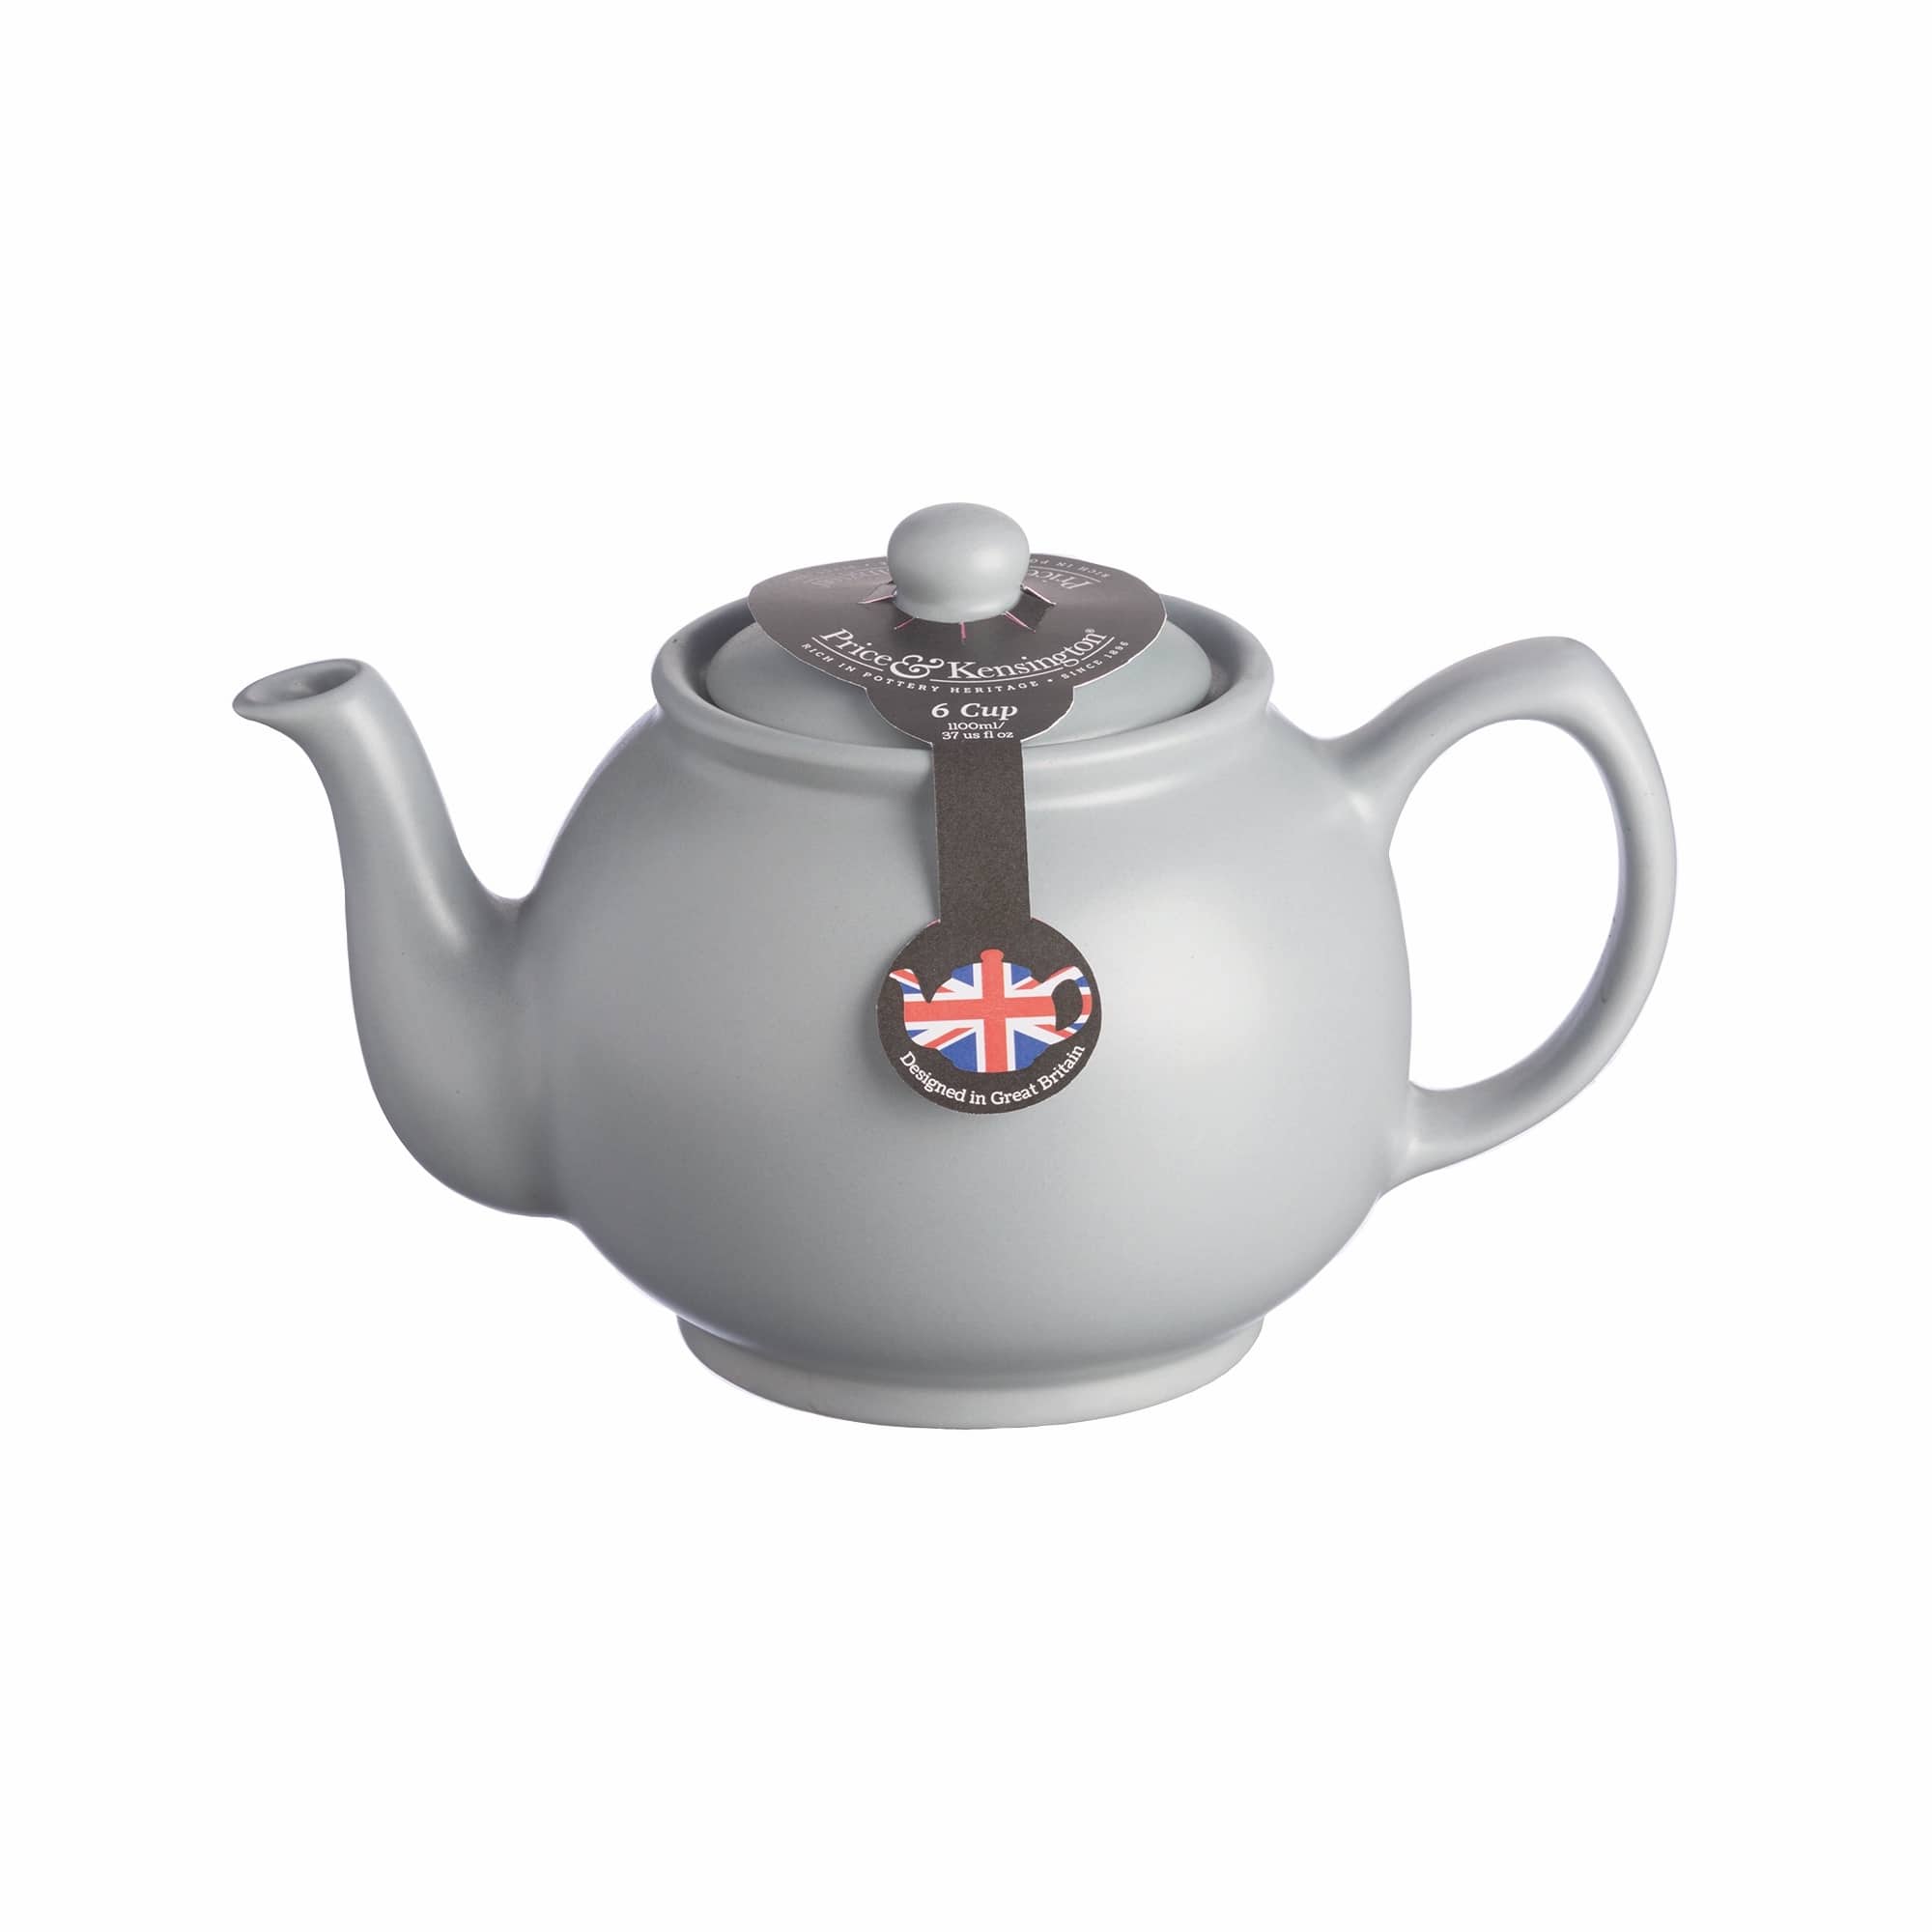 Price & Kensington Teapot 6 Cup Grey